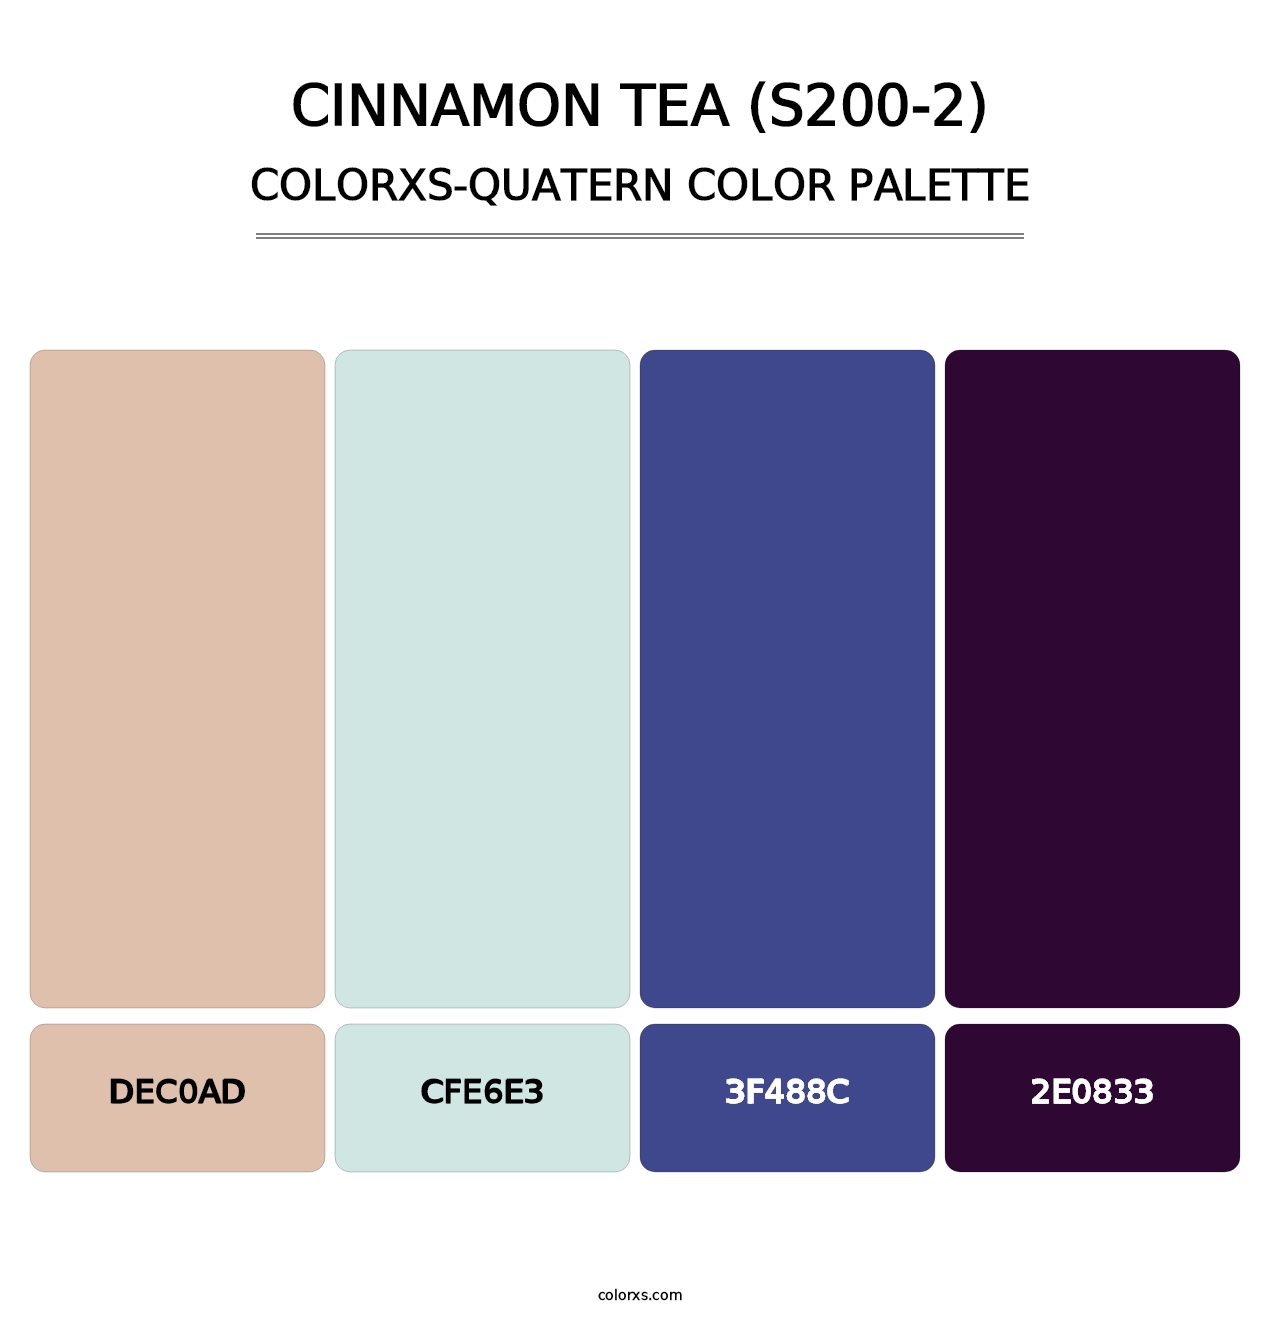 Cinnamon Tea (S200-2) - Colorxs Quatern Palette